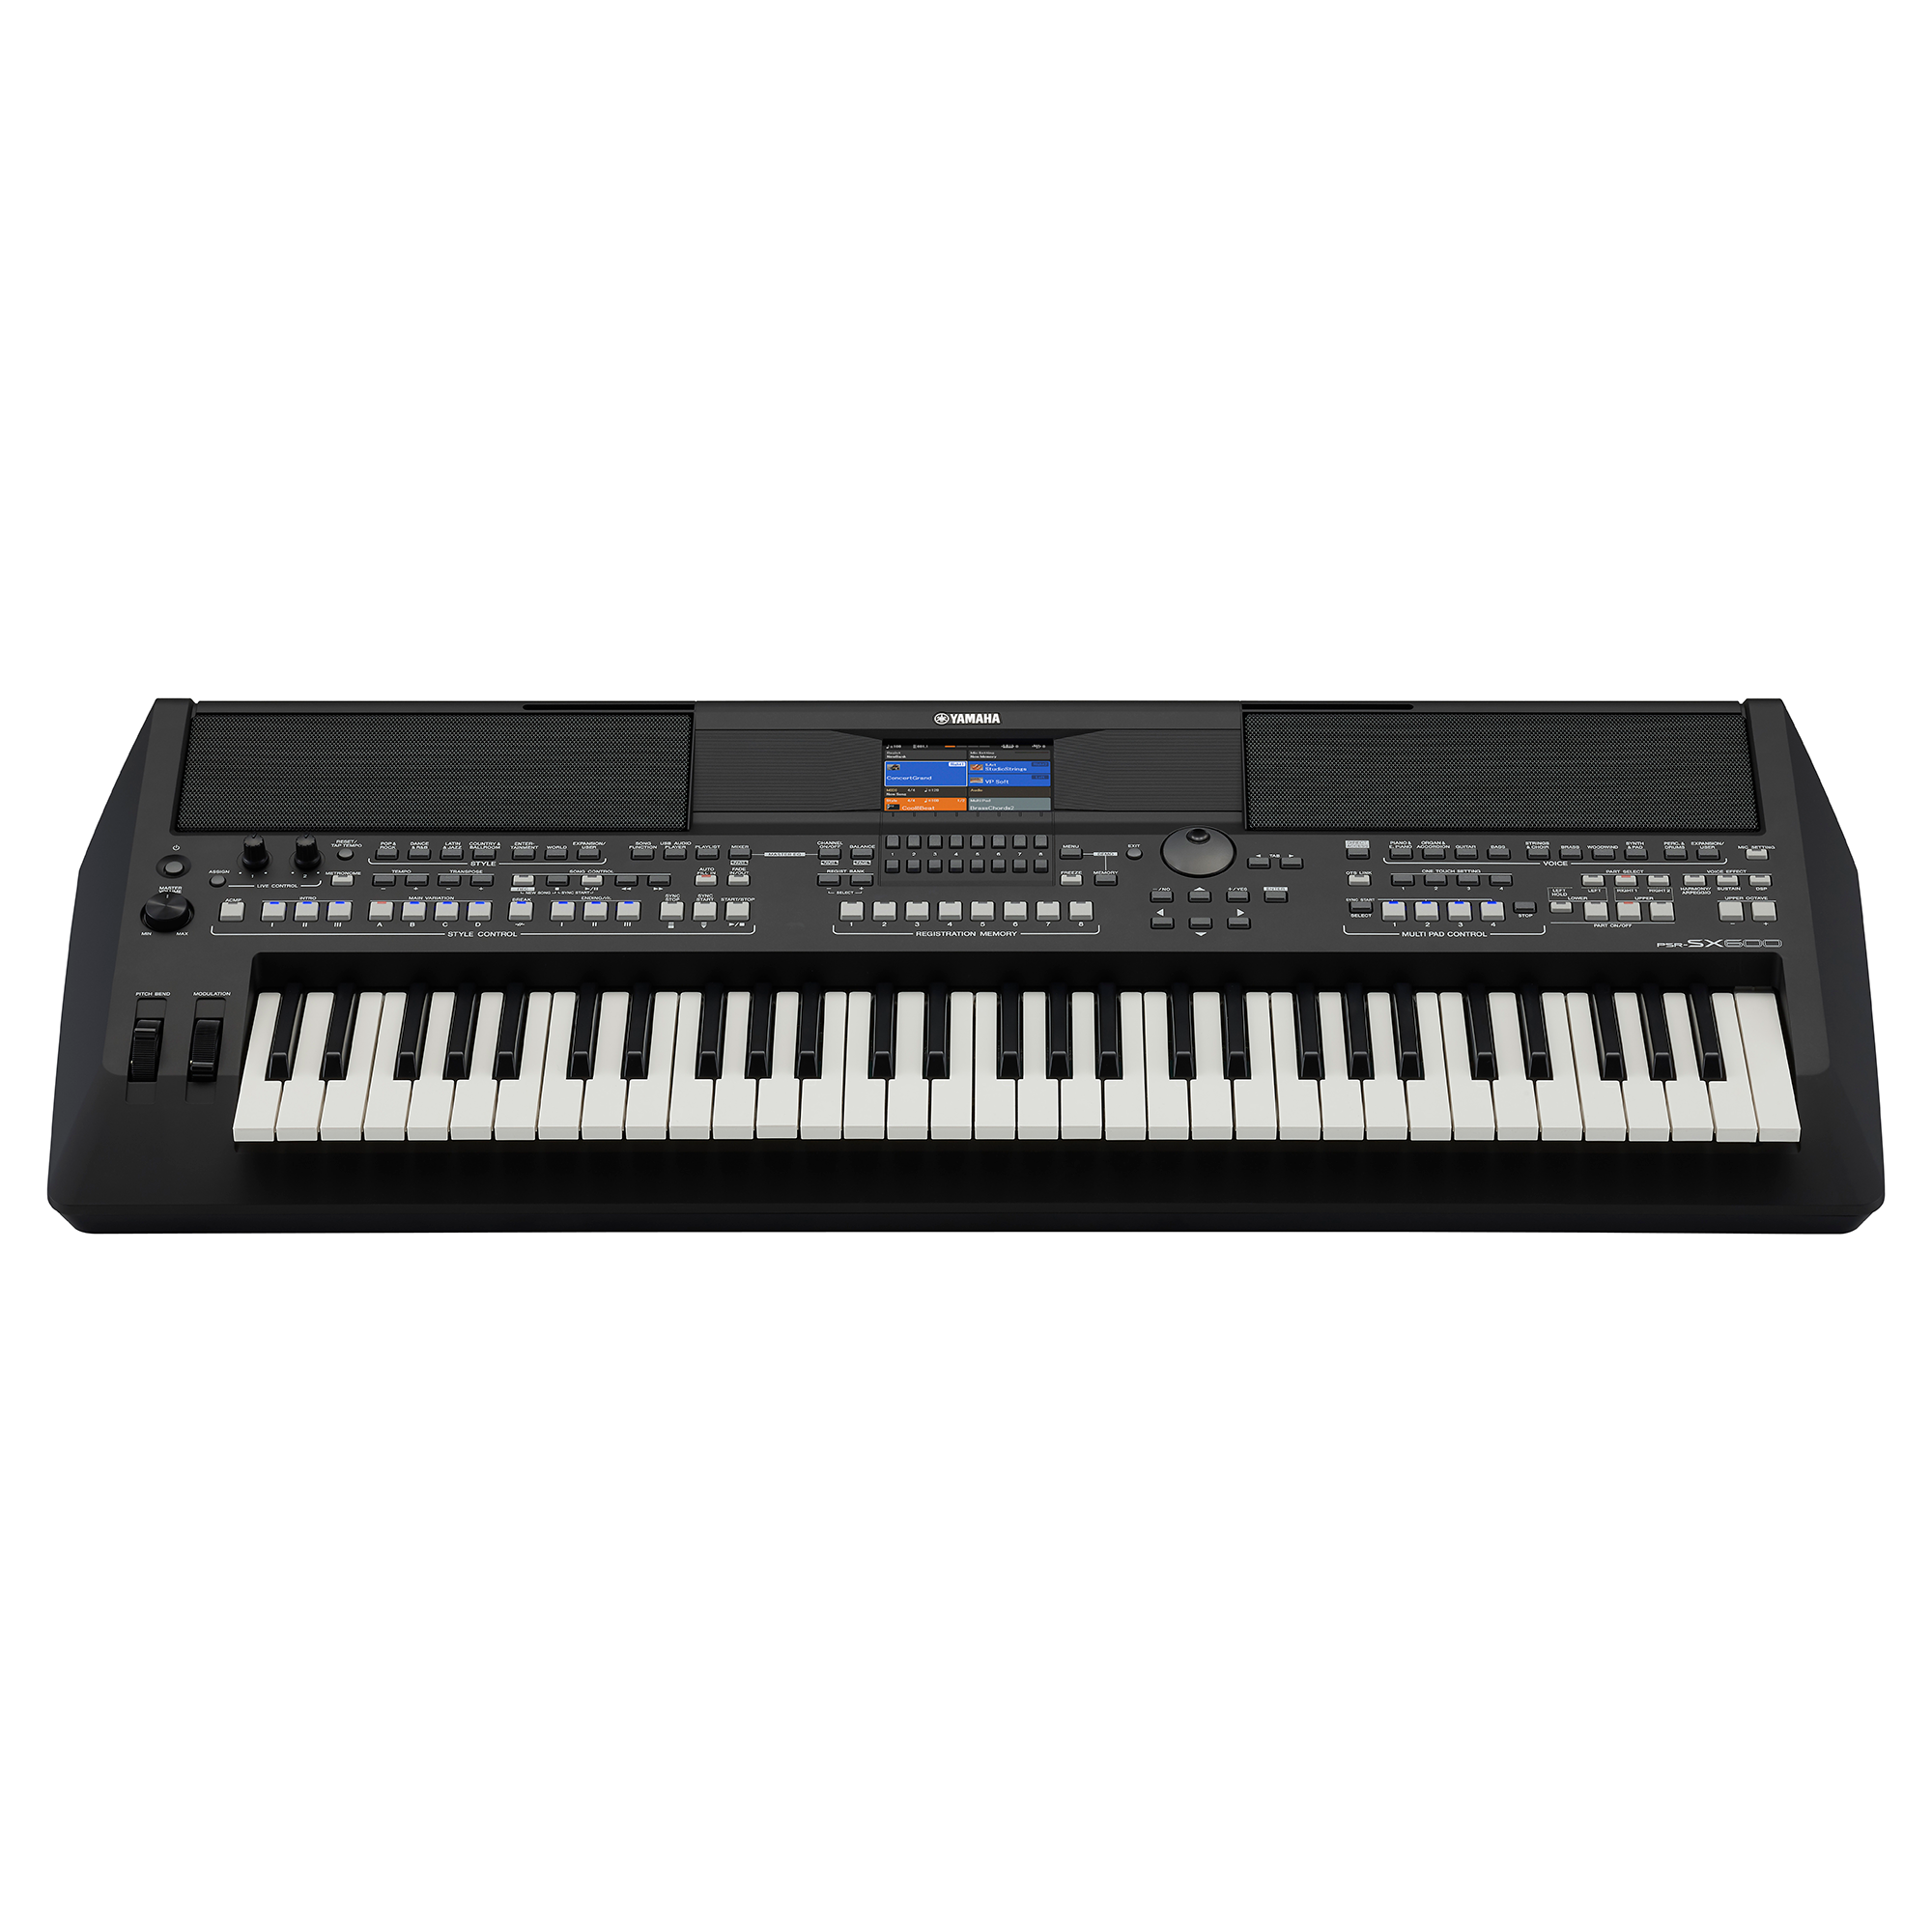 Đàn Organ điện tử, Keyboard Workstation - Yamaha PSR-SX600 (PSR SX600) - Đàn Organ điện tử chuyên nghiệp - Hàng chính hãng